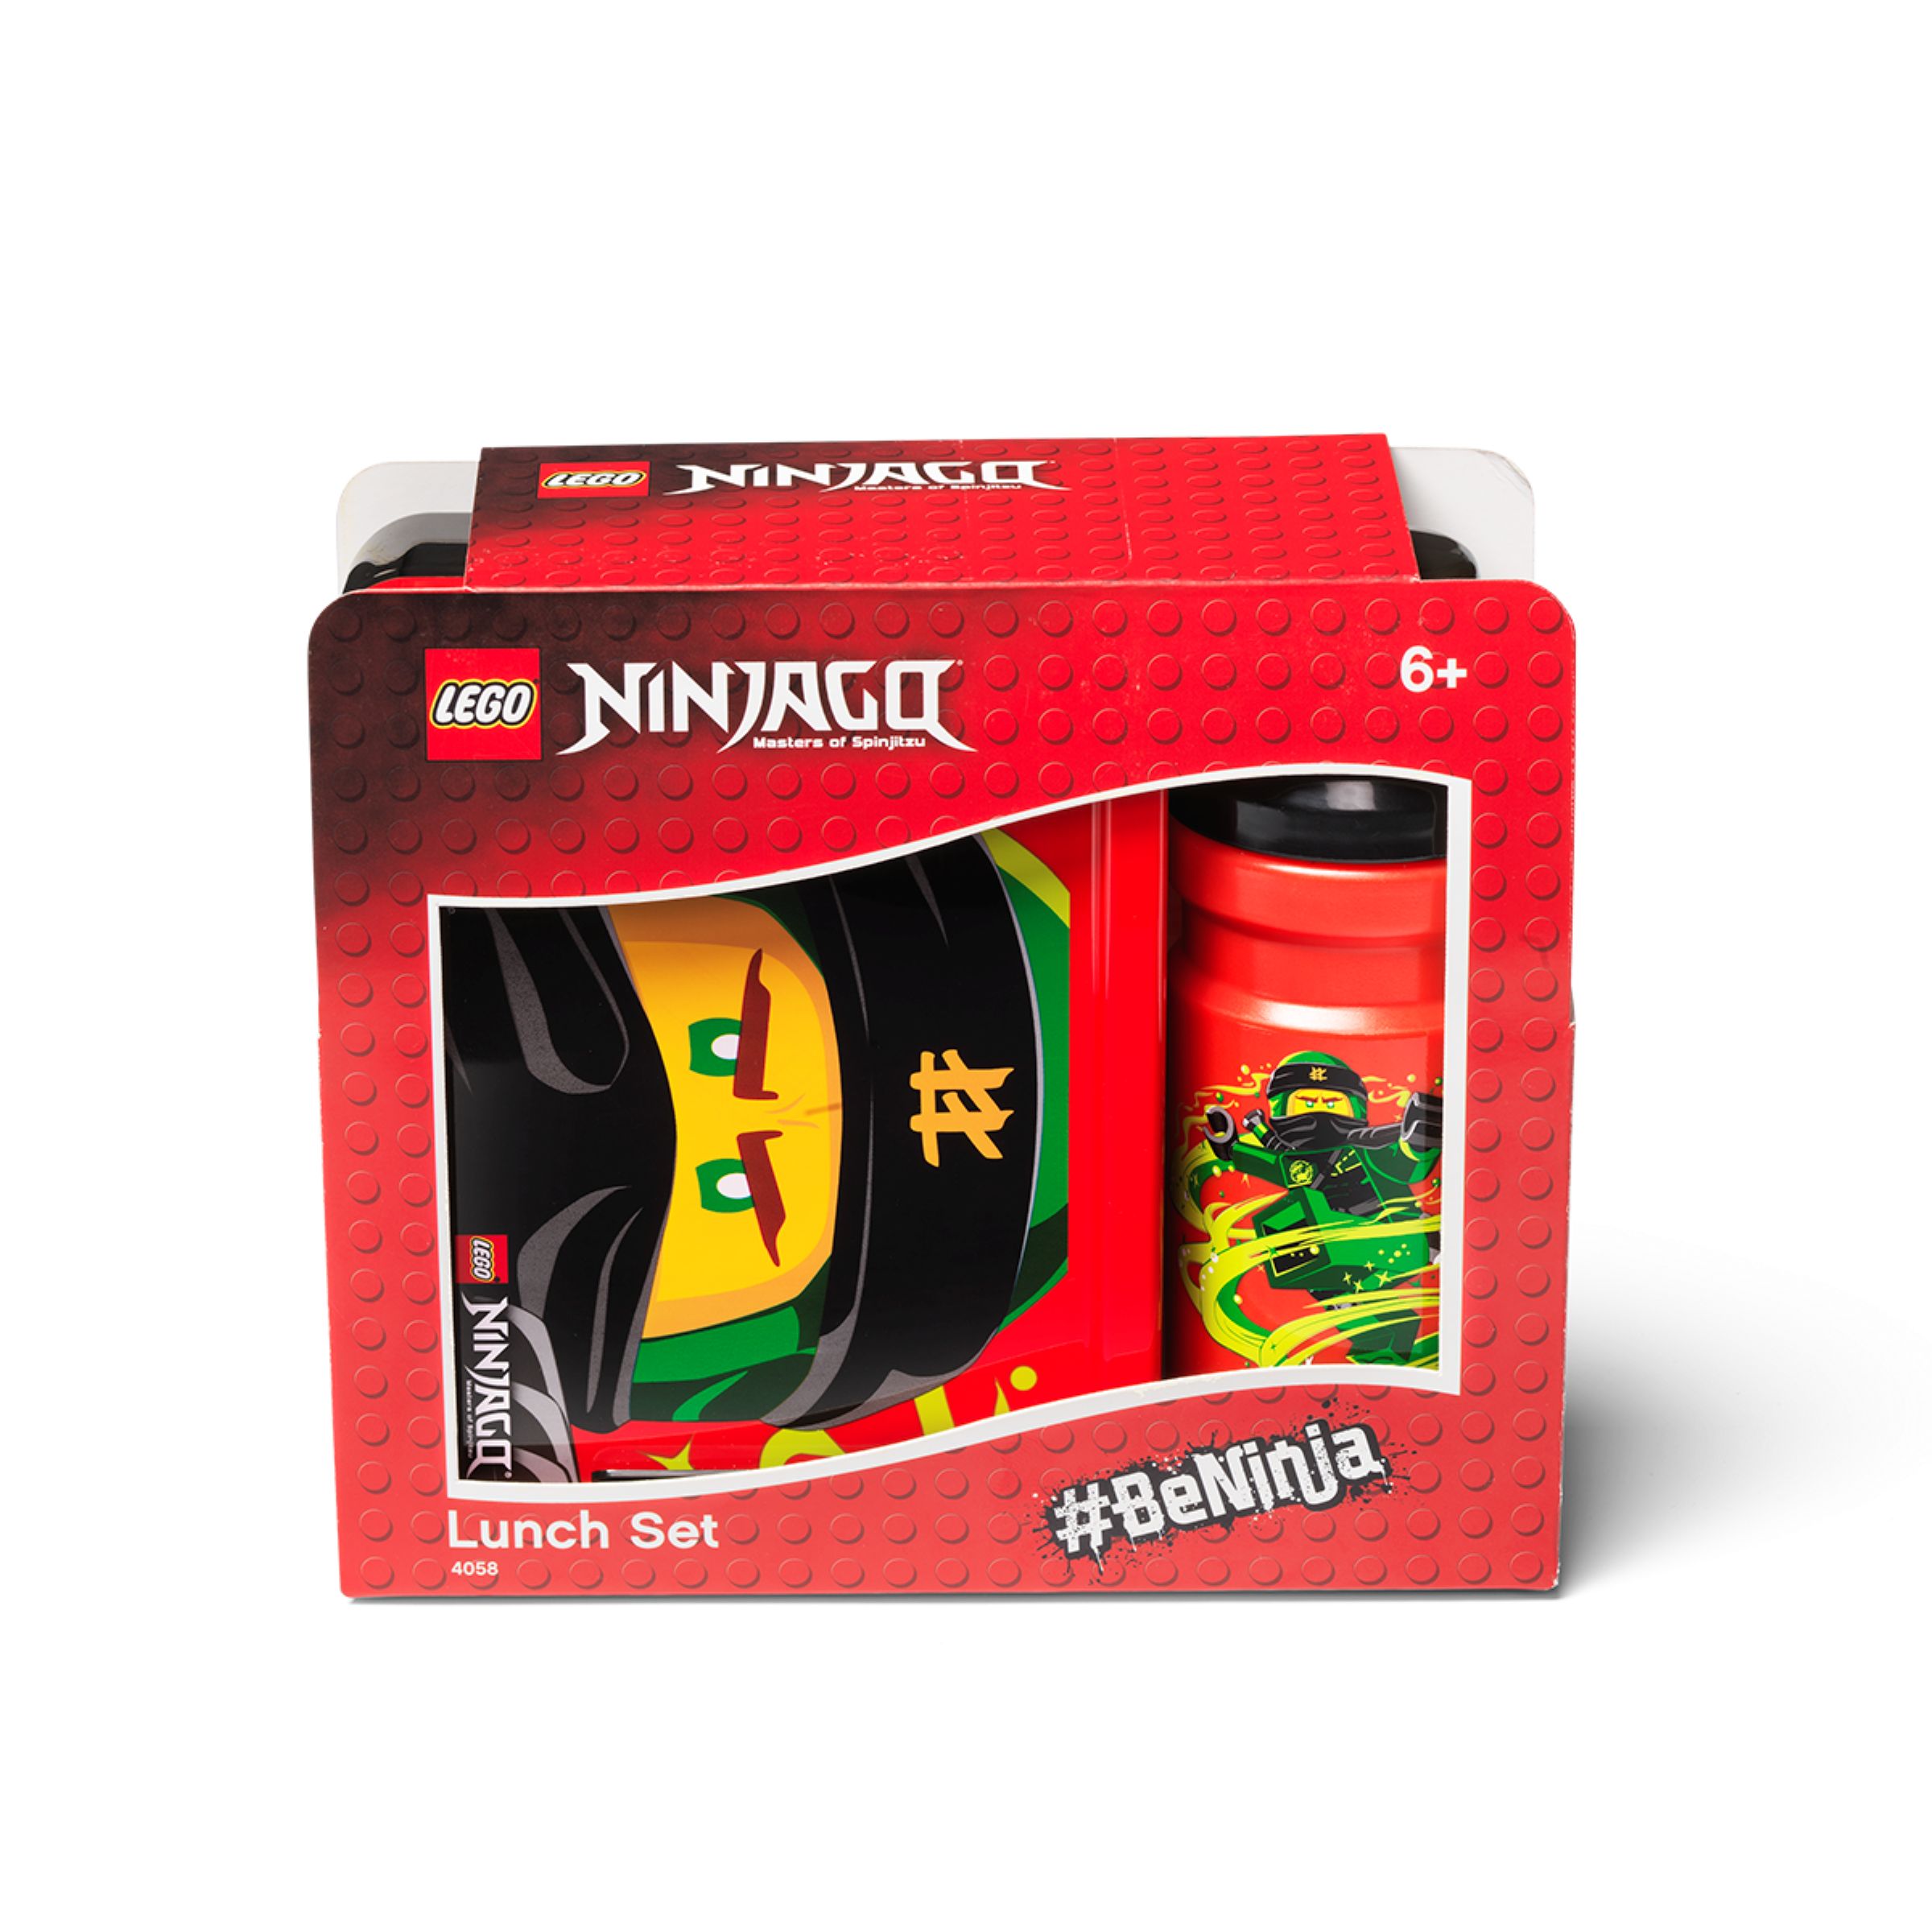 LEGO Gear 5007275 LUNCH SET NINJAGO CLASSIC LEGO_5007275_alt1.jpg